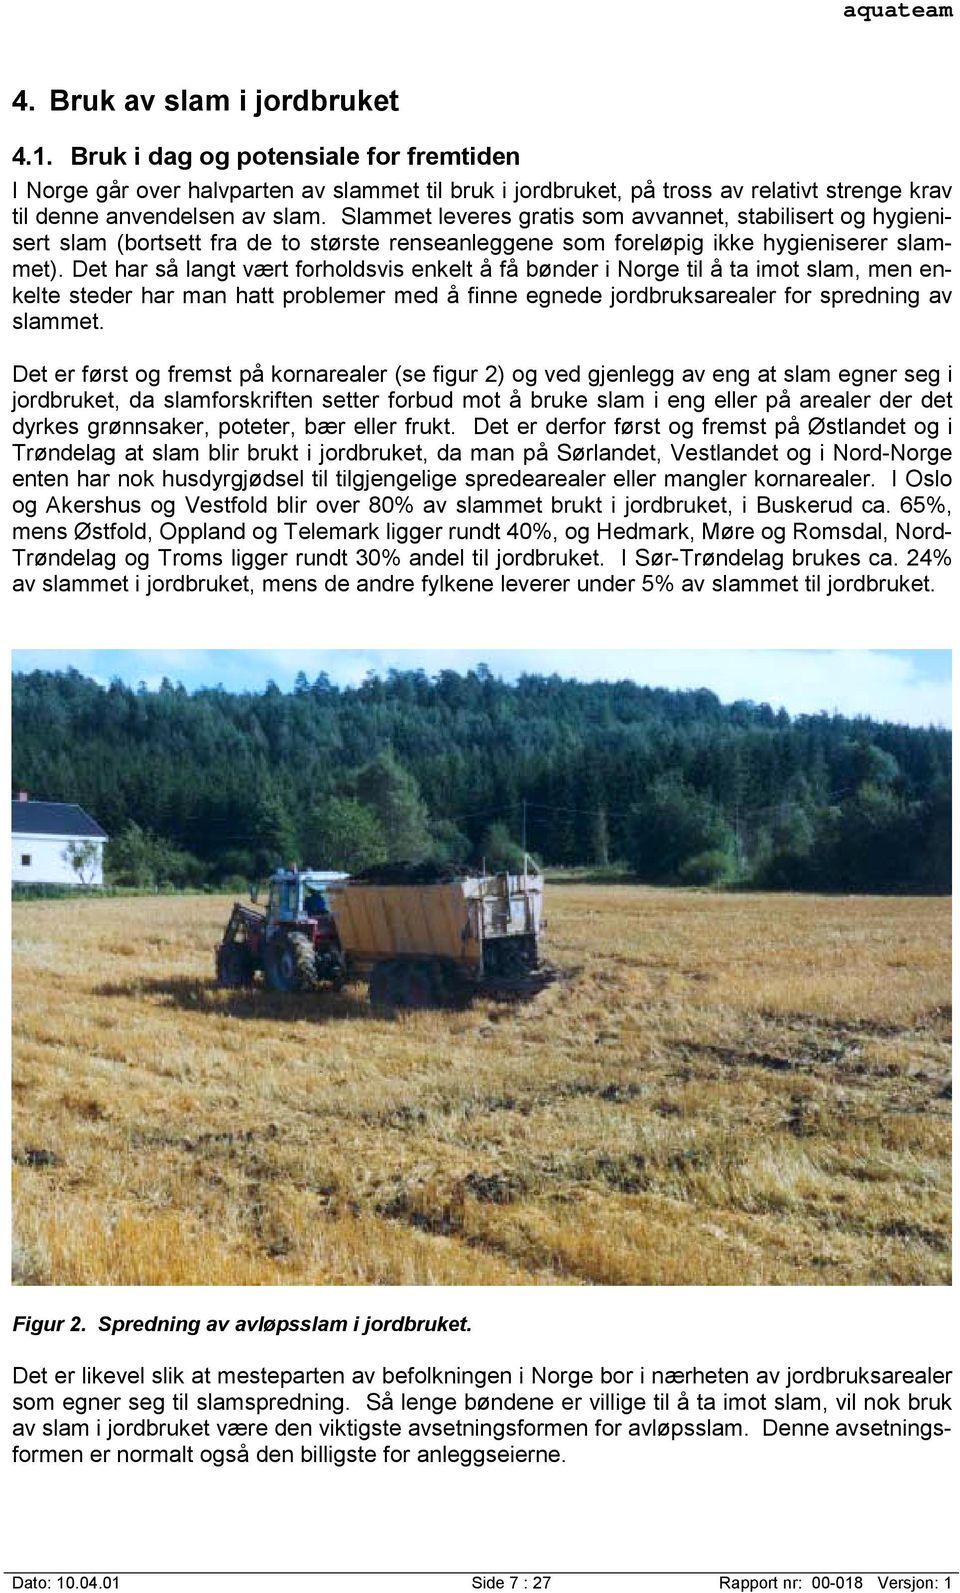 Det har så langt vært forholdsvis enkelt å få bønder i Norge til å ta imot slam, men enkelte steder har man hatt problemer med å finne egnede jordbruksarealer for spredning av slammet.